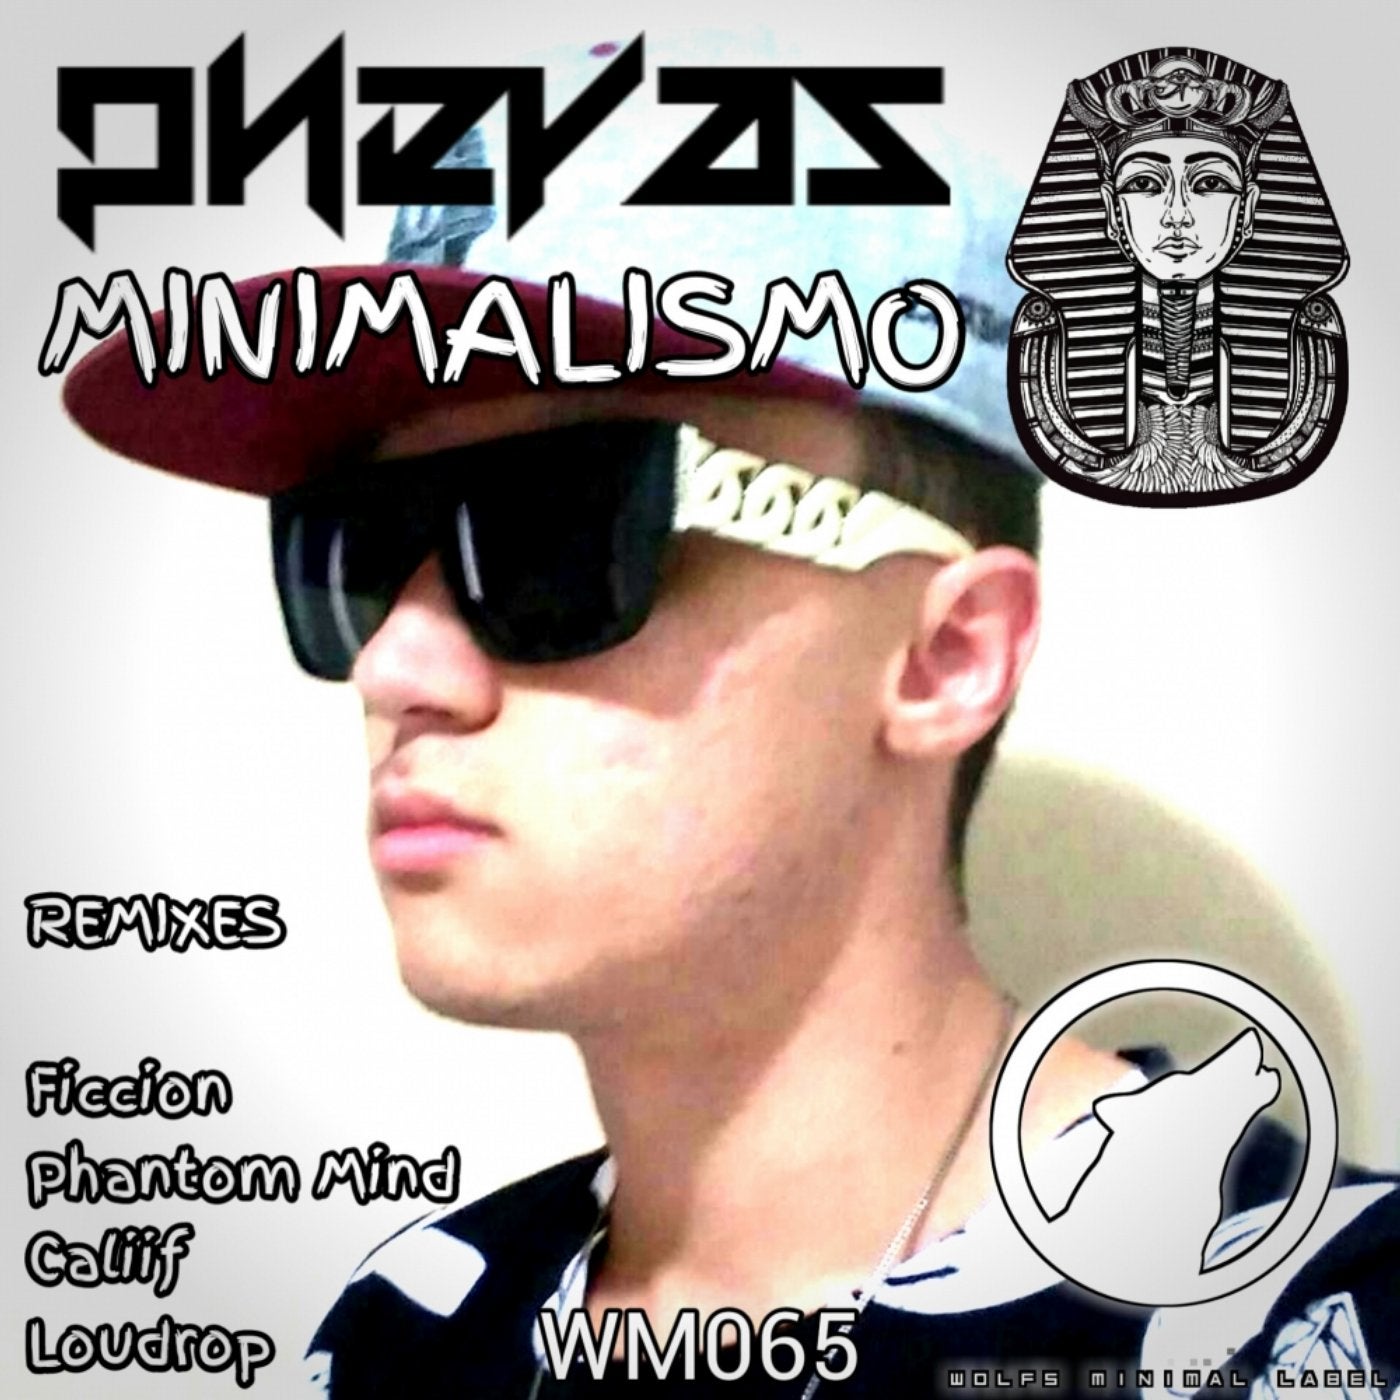 Minimalismo: The Remixes